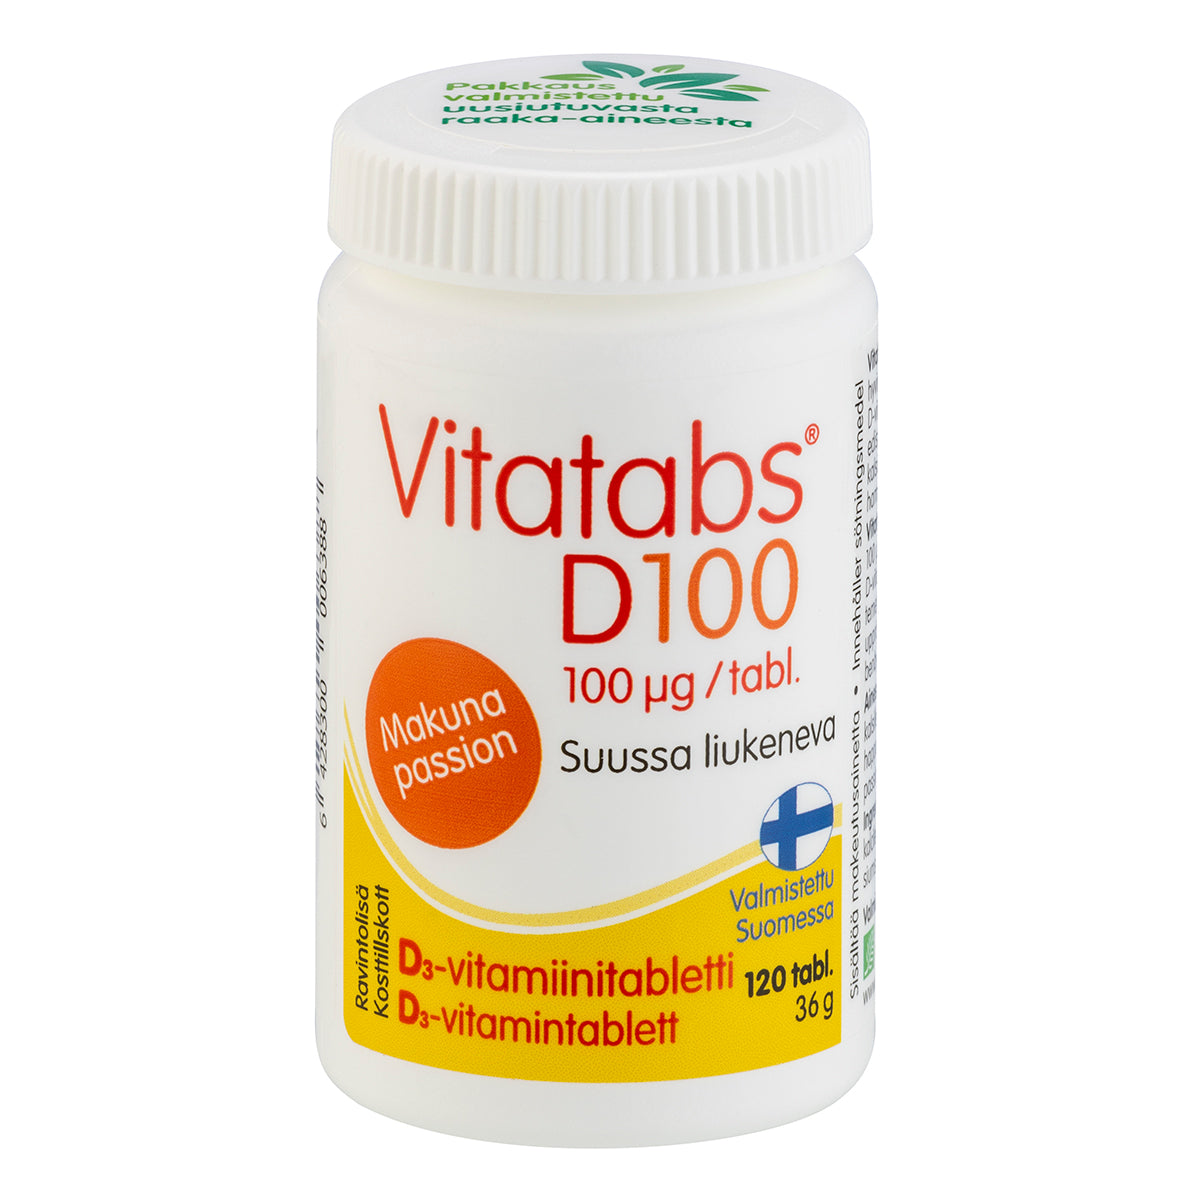 Vitatabs D 100 µg - Passioninmakuinen D3-vitamiini 120 tabl. - erä